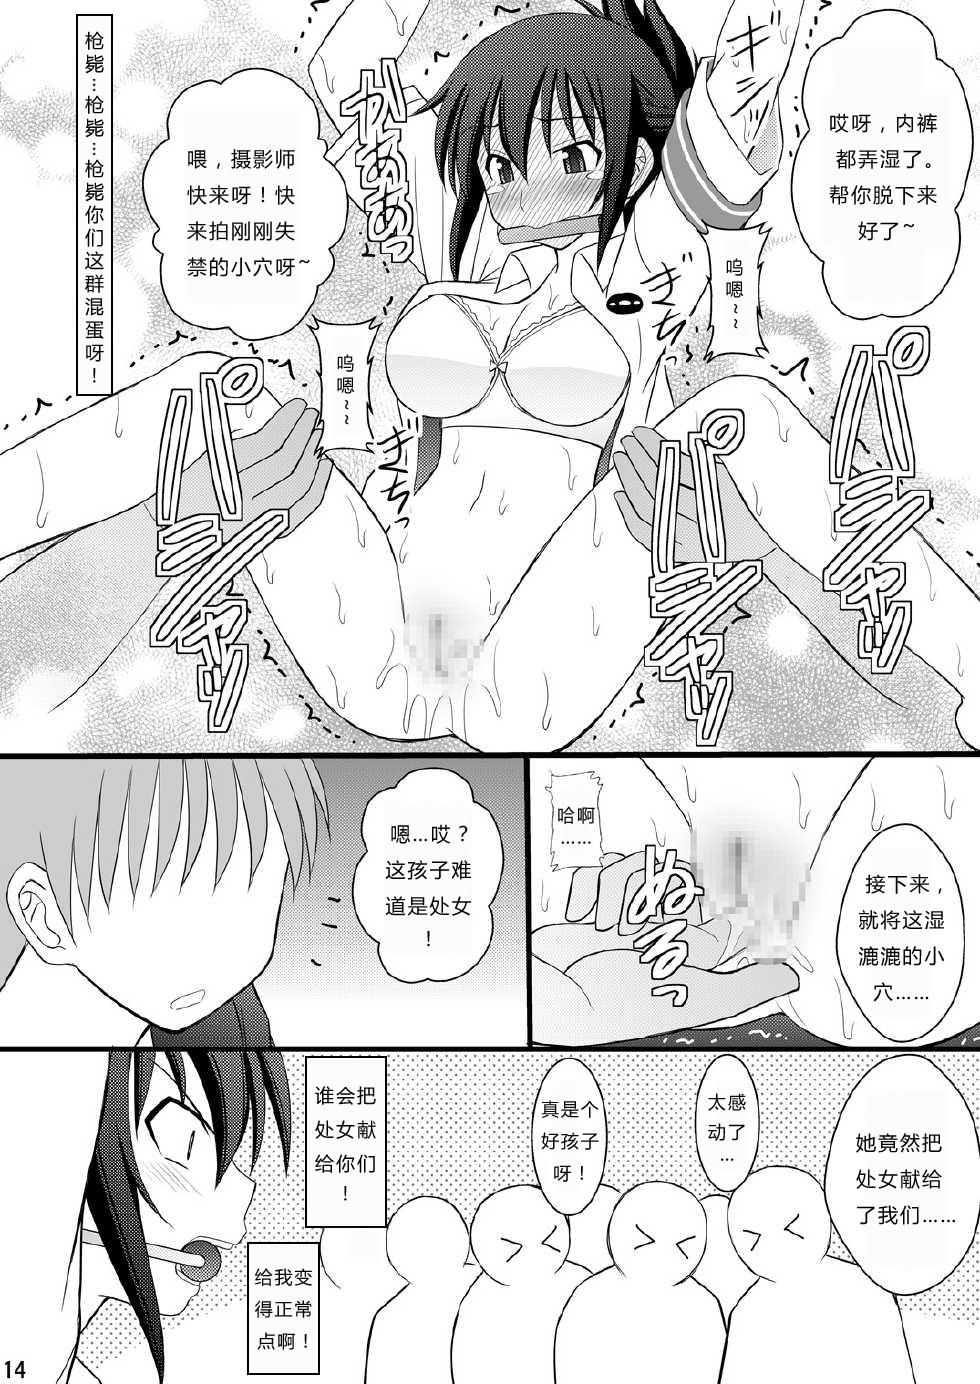 Ball Busting Seishin Houkai Suru made Kusuguri Makutte Ryoujoku shite Miru Test VII Chikan Densha de Ikou - Rail wars Transsexual - Page 11